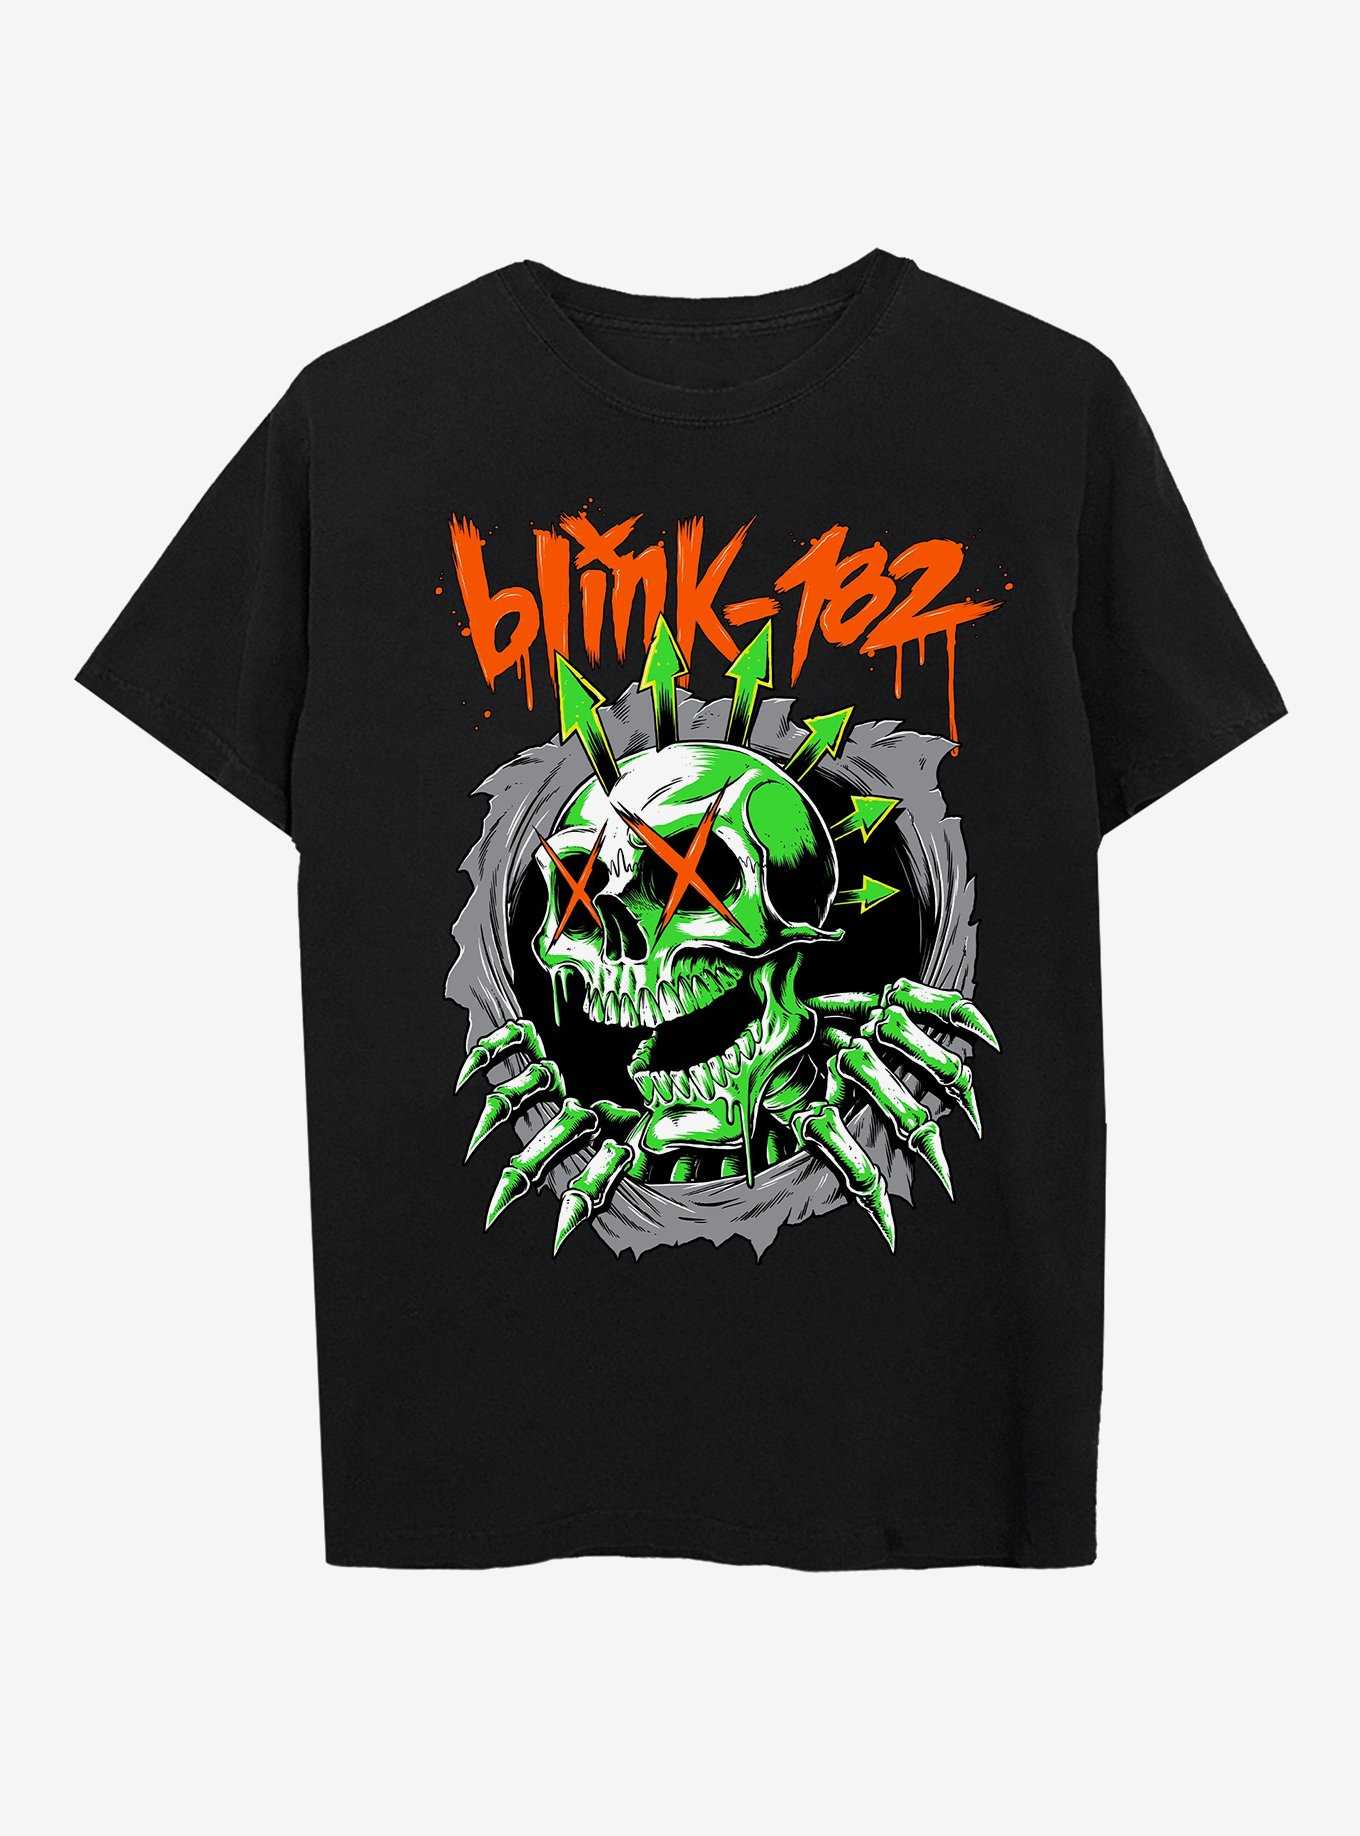 OFFICIAL Blink 182 Merch & Shirts